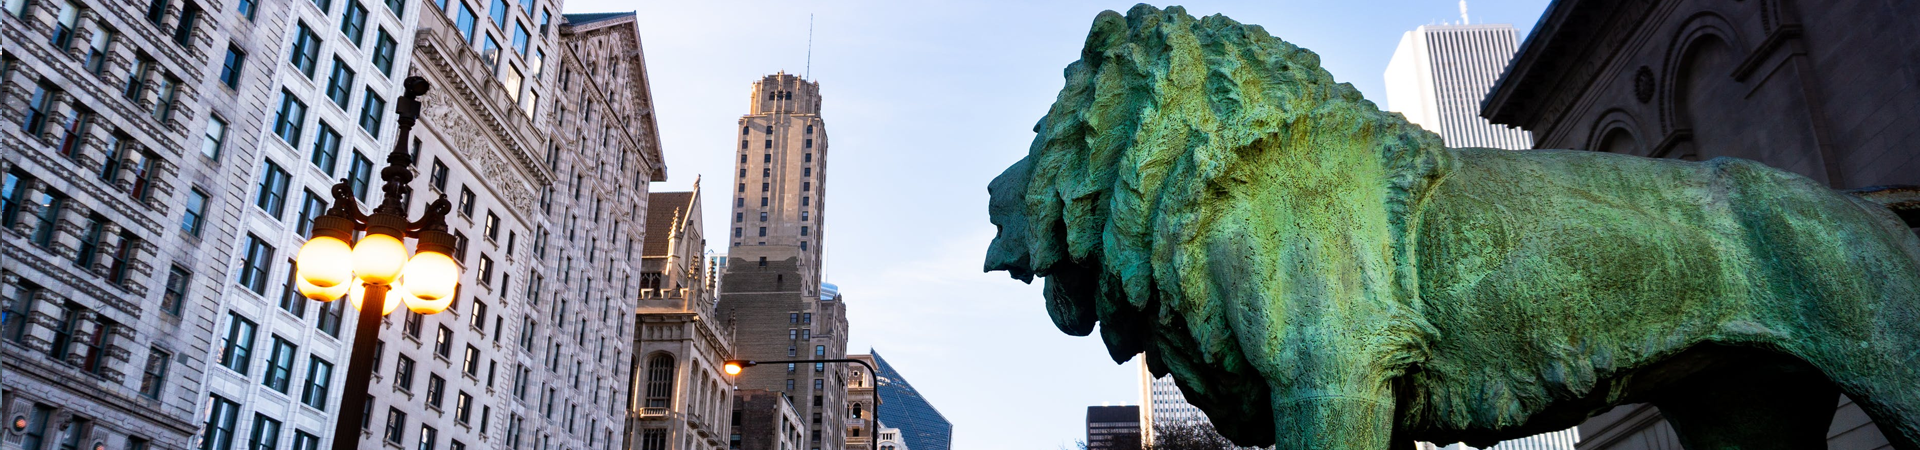 Art Institute lion sculpture